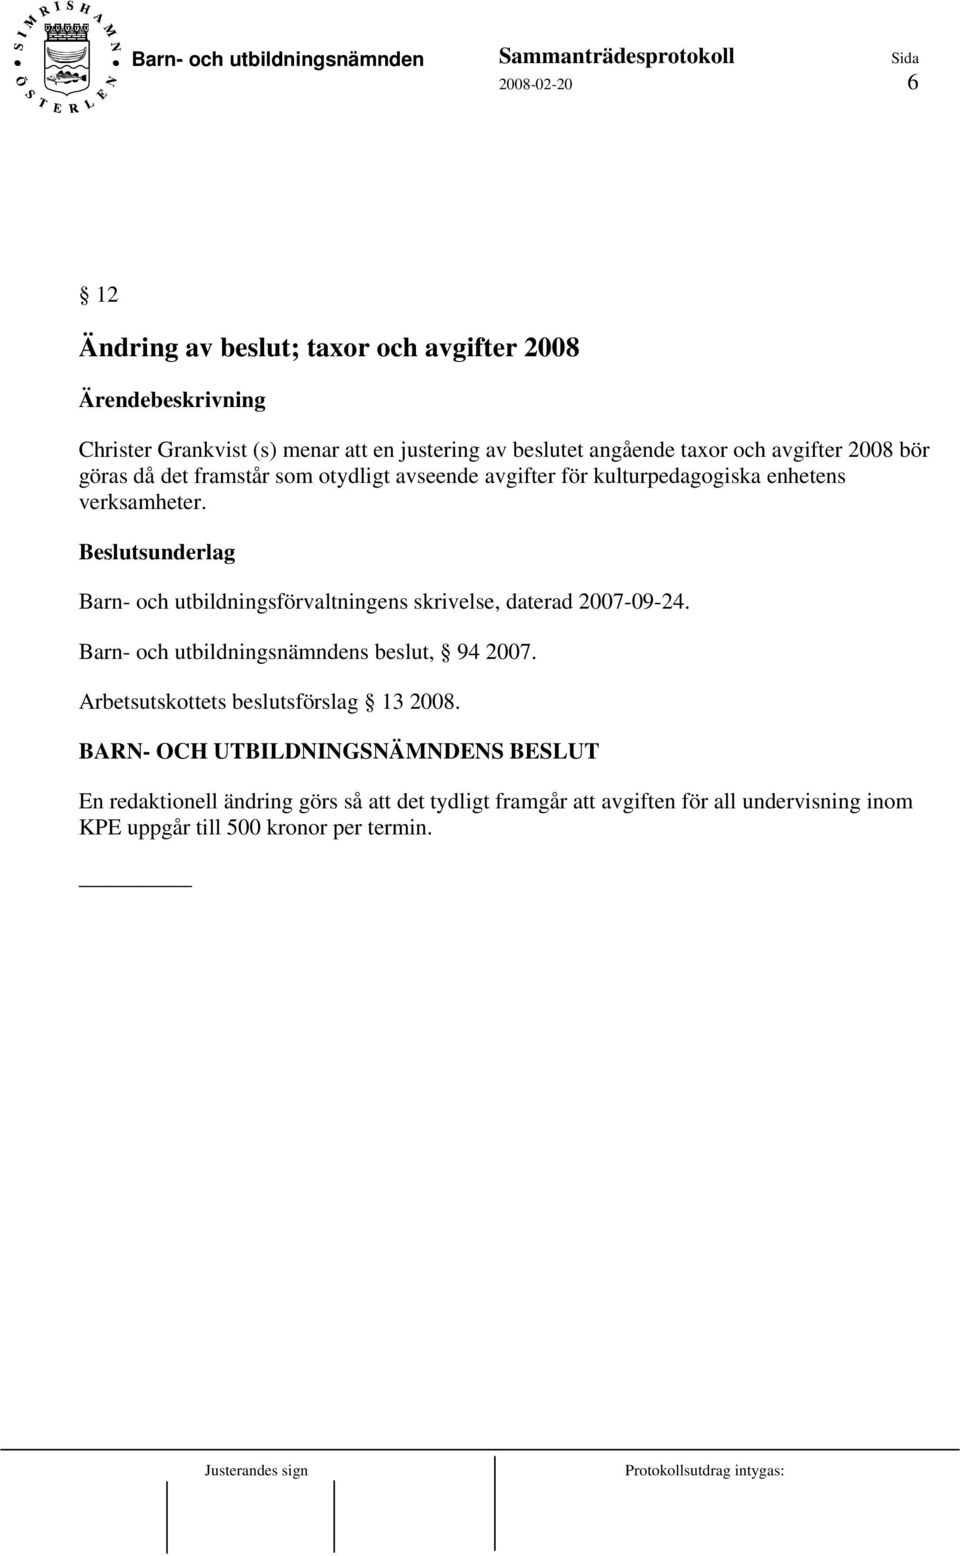 Beslutsunderlag Barn- och utbildningsförvaltningens skrivelse, daterad 2007-09-24. Barn- och utbildningsnämndens beslut, 94 2007.